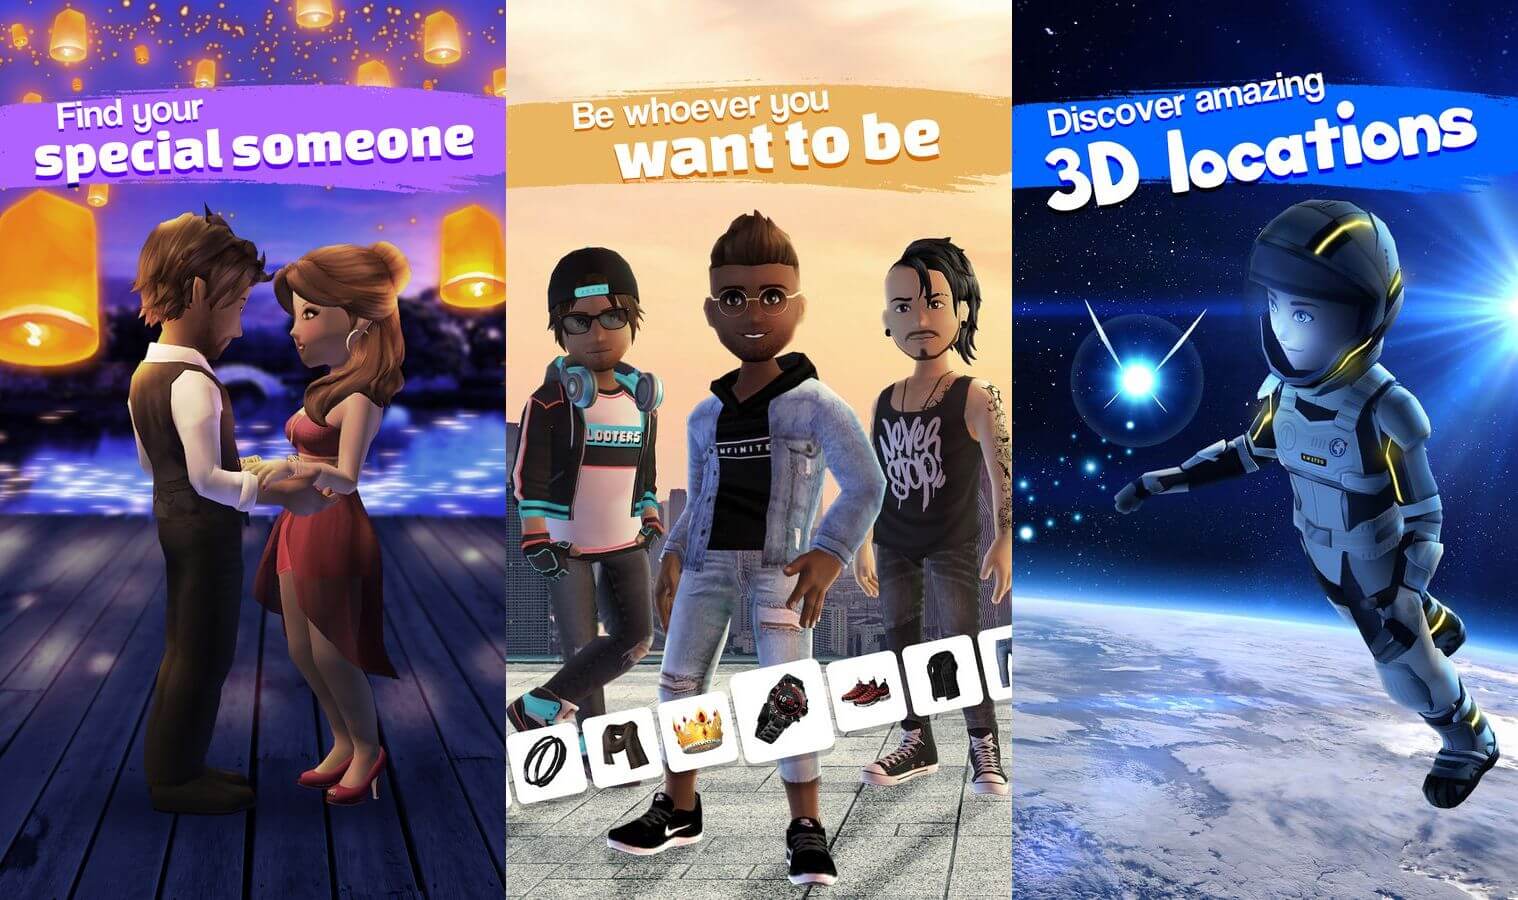 Club Cooee - 3D-аватар, чат, вечеринка и дружба.